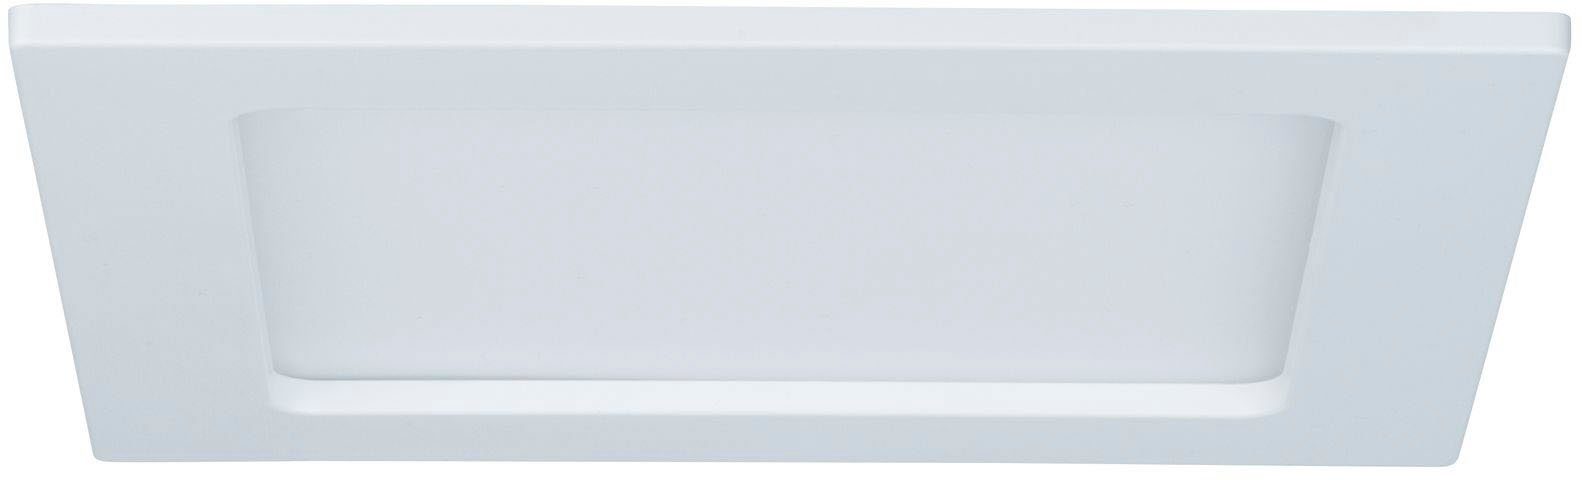 Badezimmer Decke LED Panels online kaufen | OTTO